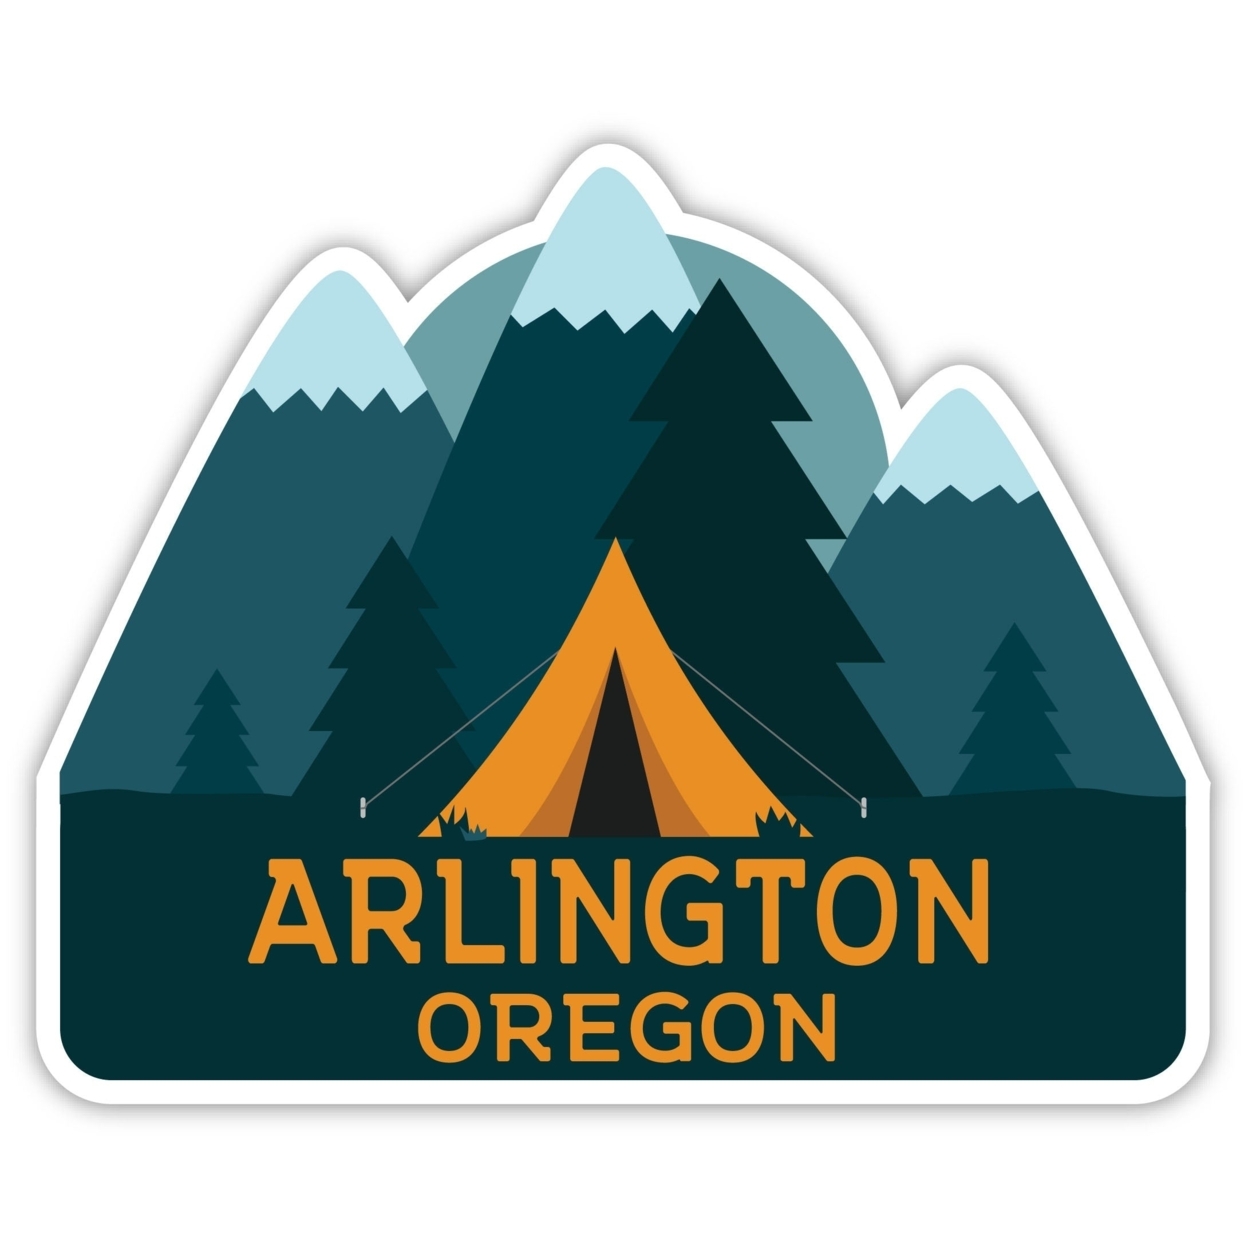 Arlington Oregon Souvenir Decorative Stickers (Choose Theme And Size) - 4-Pack, 8-Inch, Tent